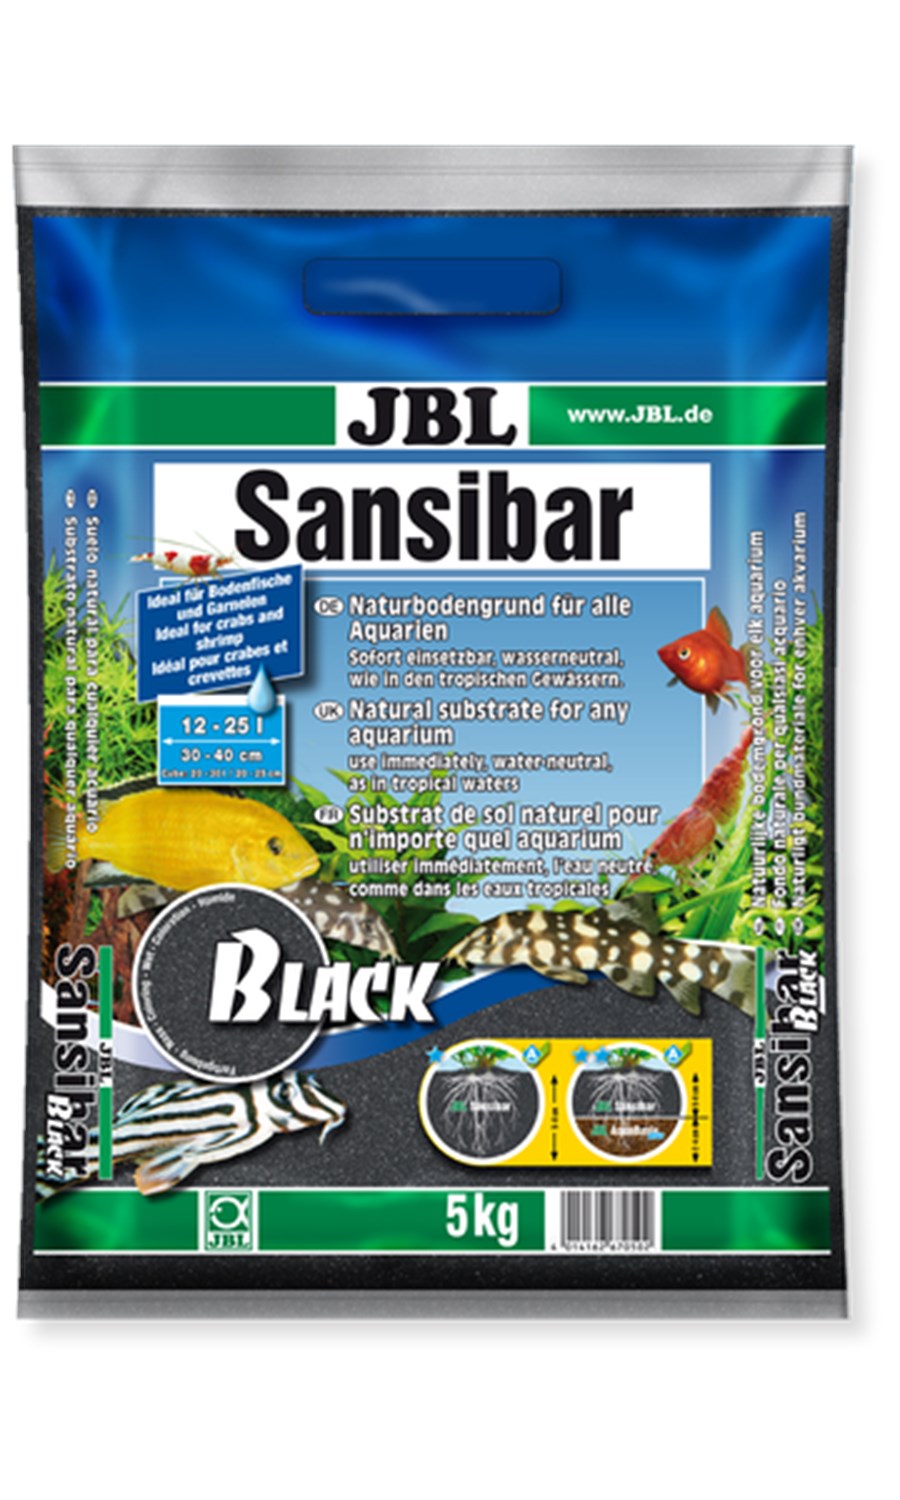 JBL Sansibar BLACK 5kg